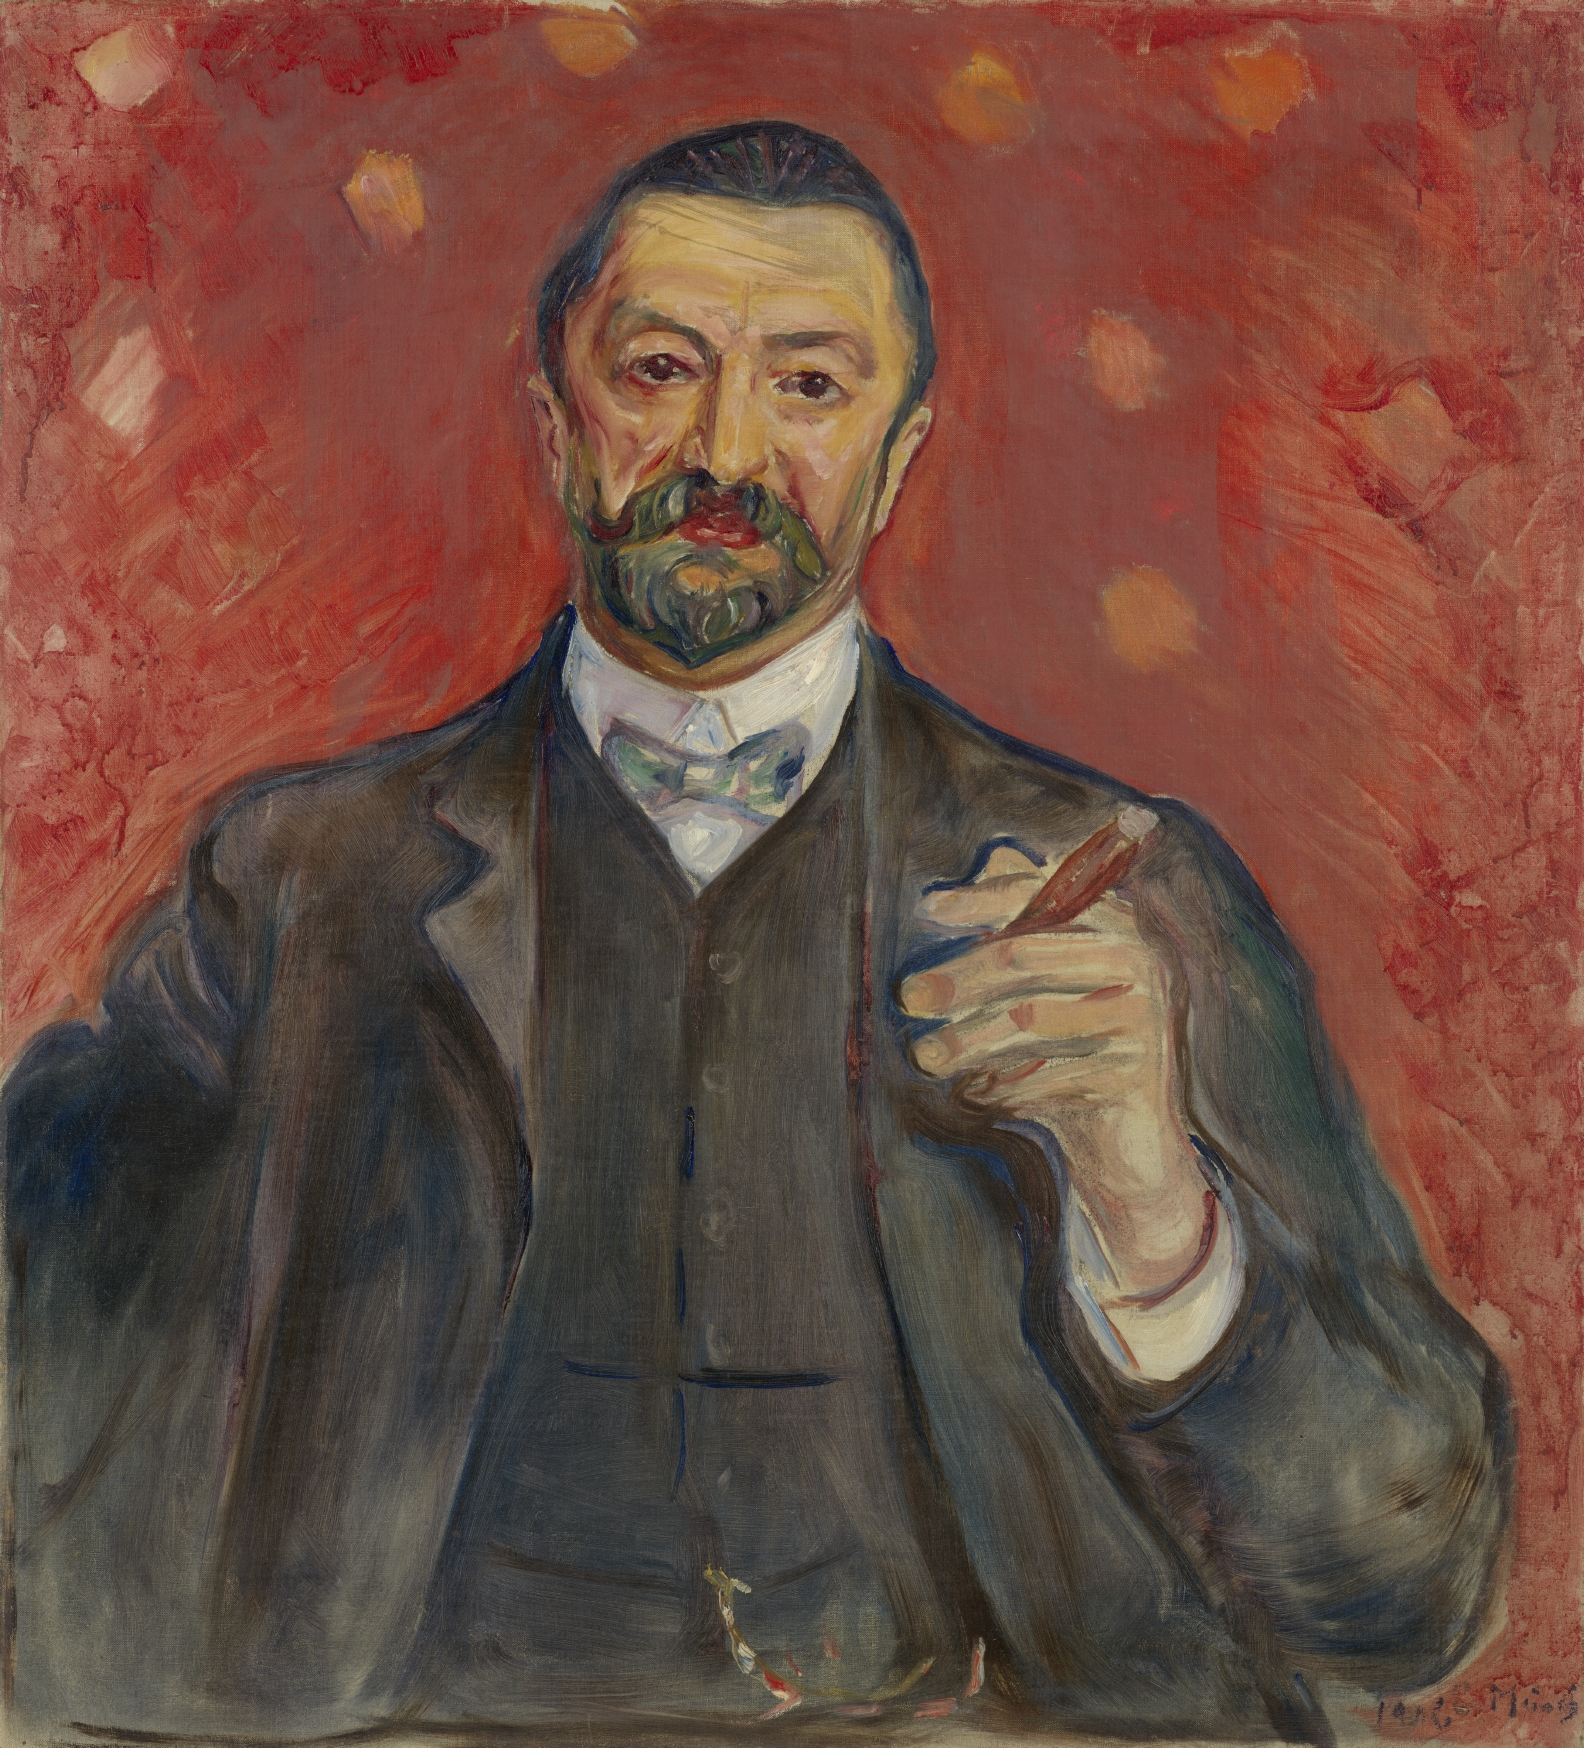 بورتريه لفيليكس أورباخ by Edvard Munch - 1906 م - 85.4 في 77.1 سم 